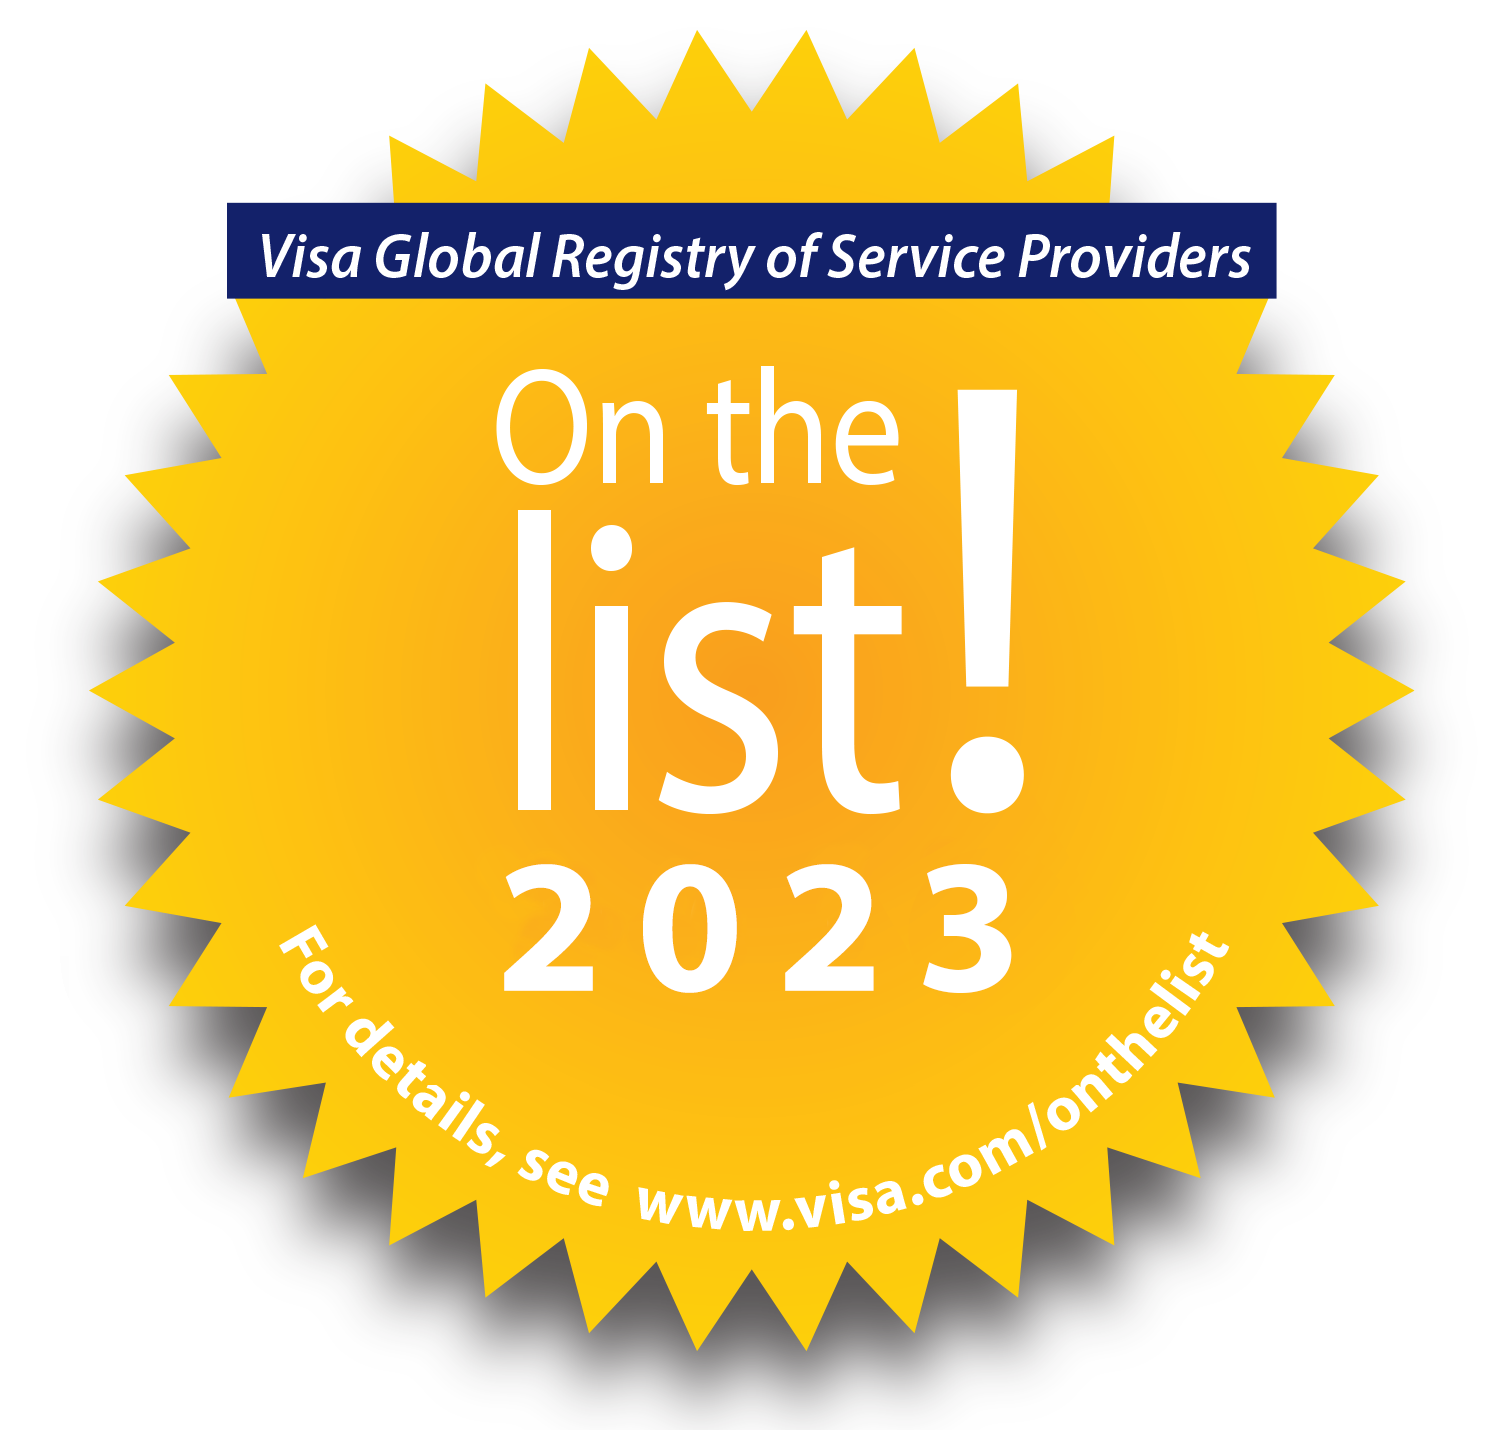 Visa global registry of service providers